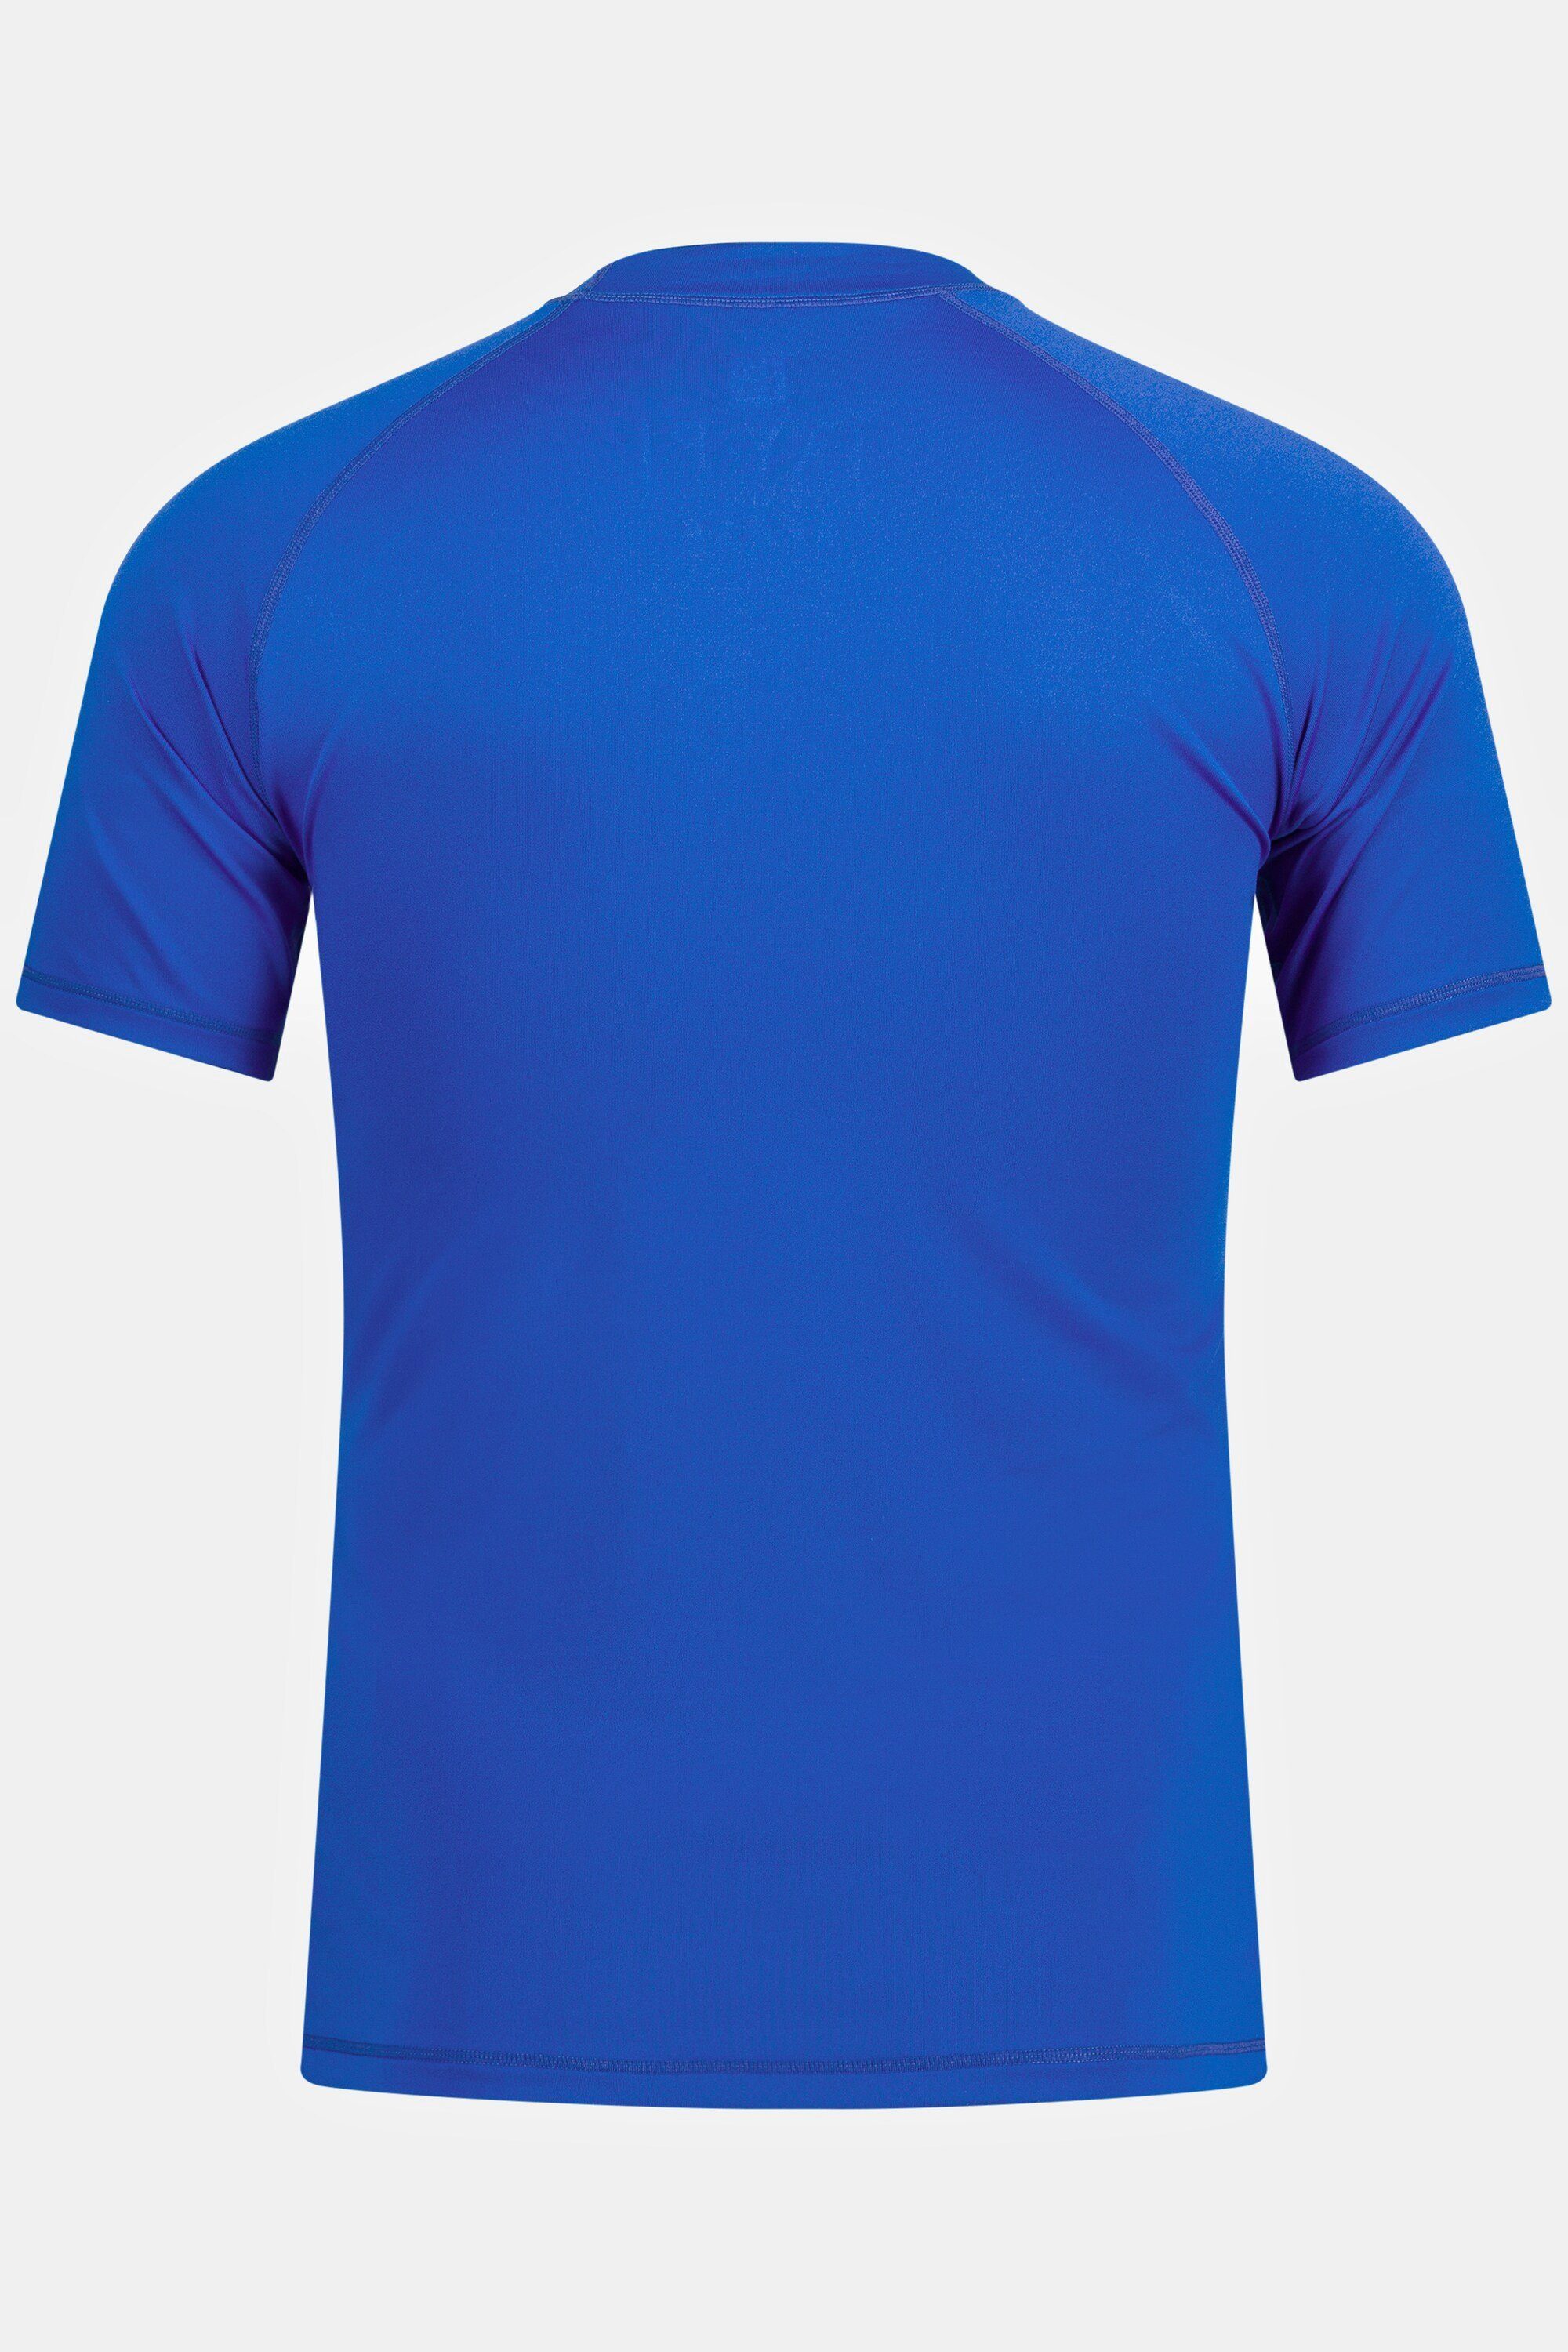 Halbarm JP1880 T-Shirt Schwimmshirt Stehkragen UV-Schutz blau